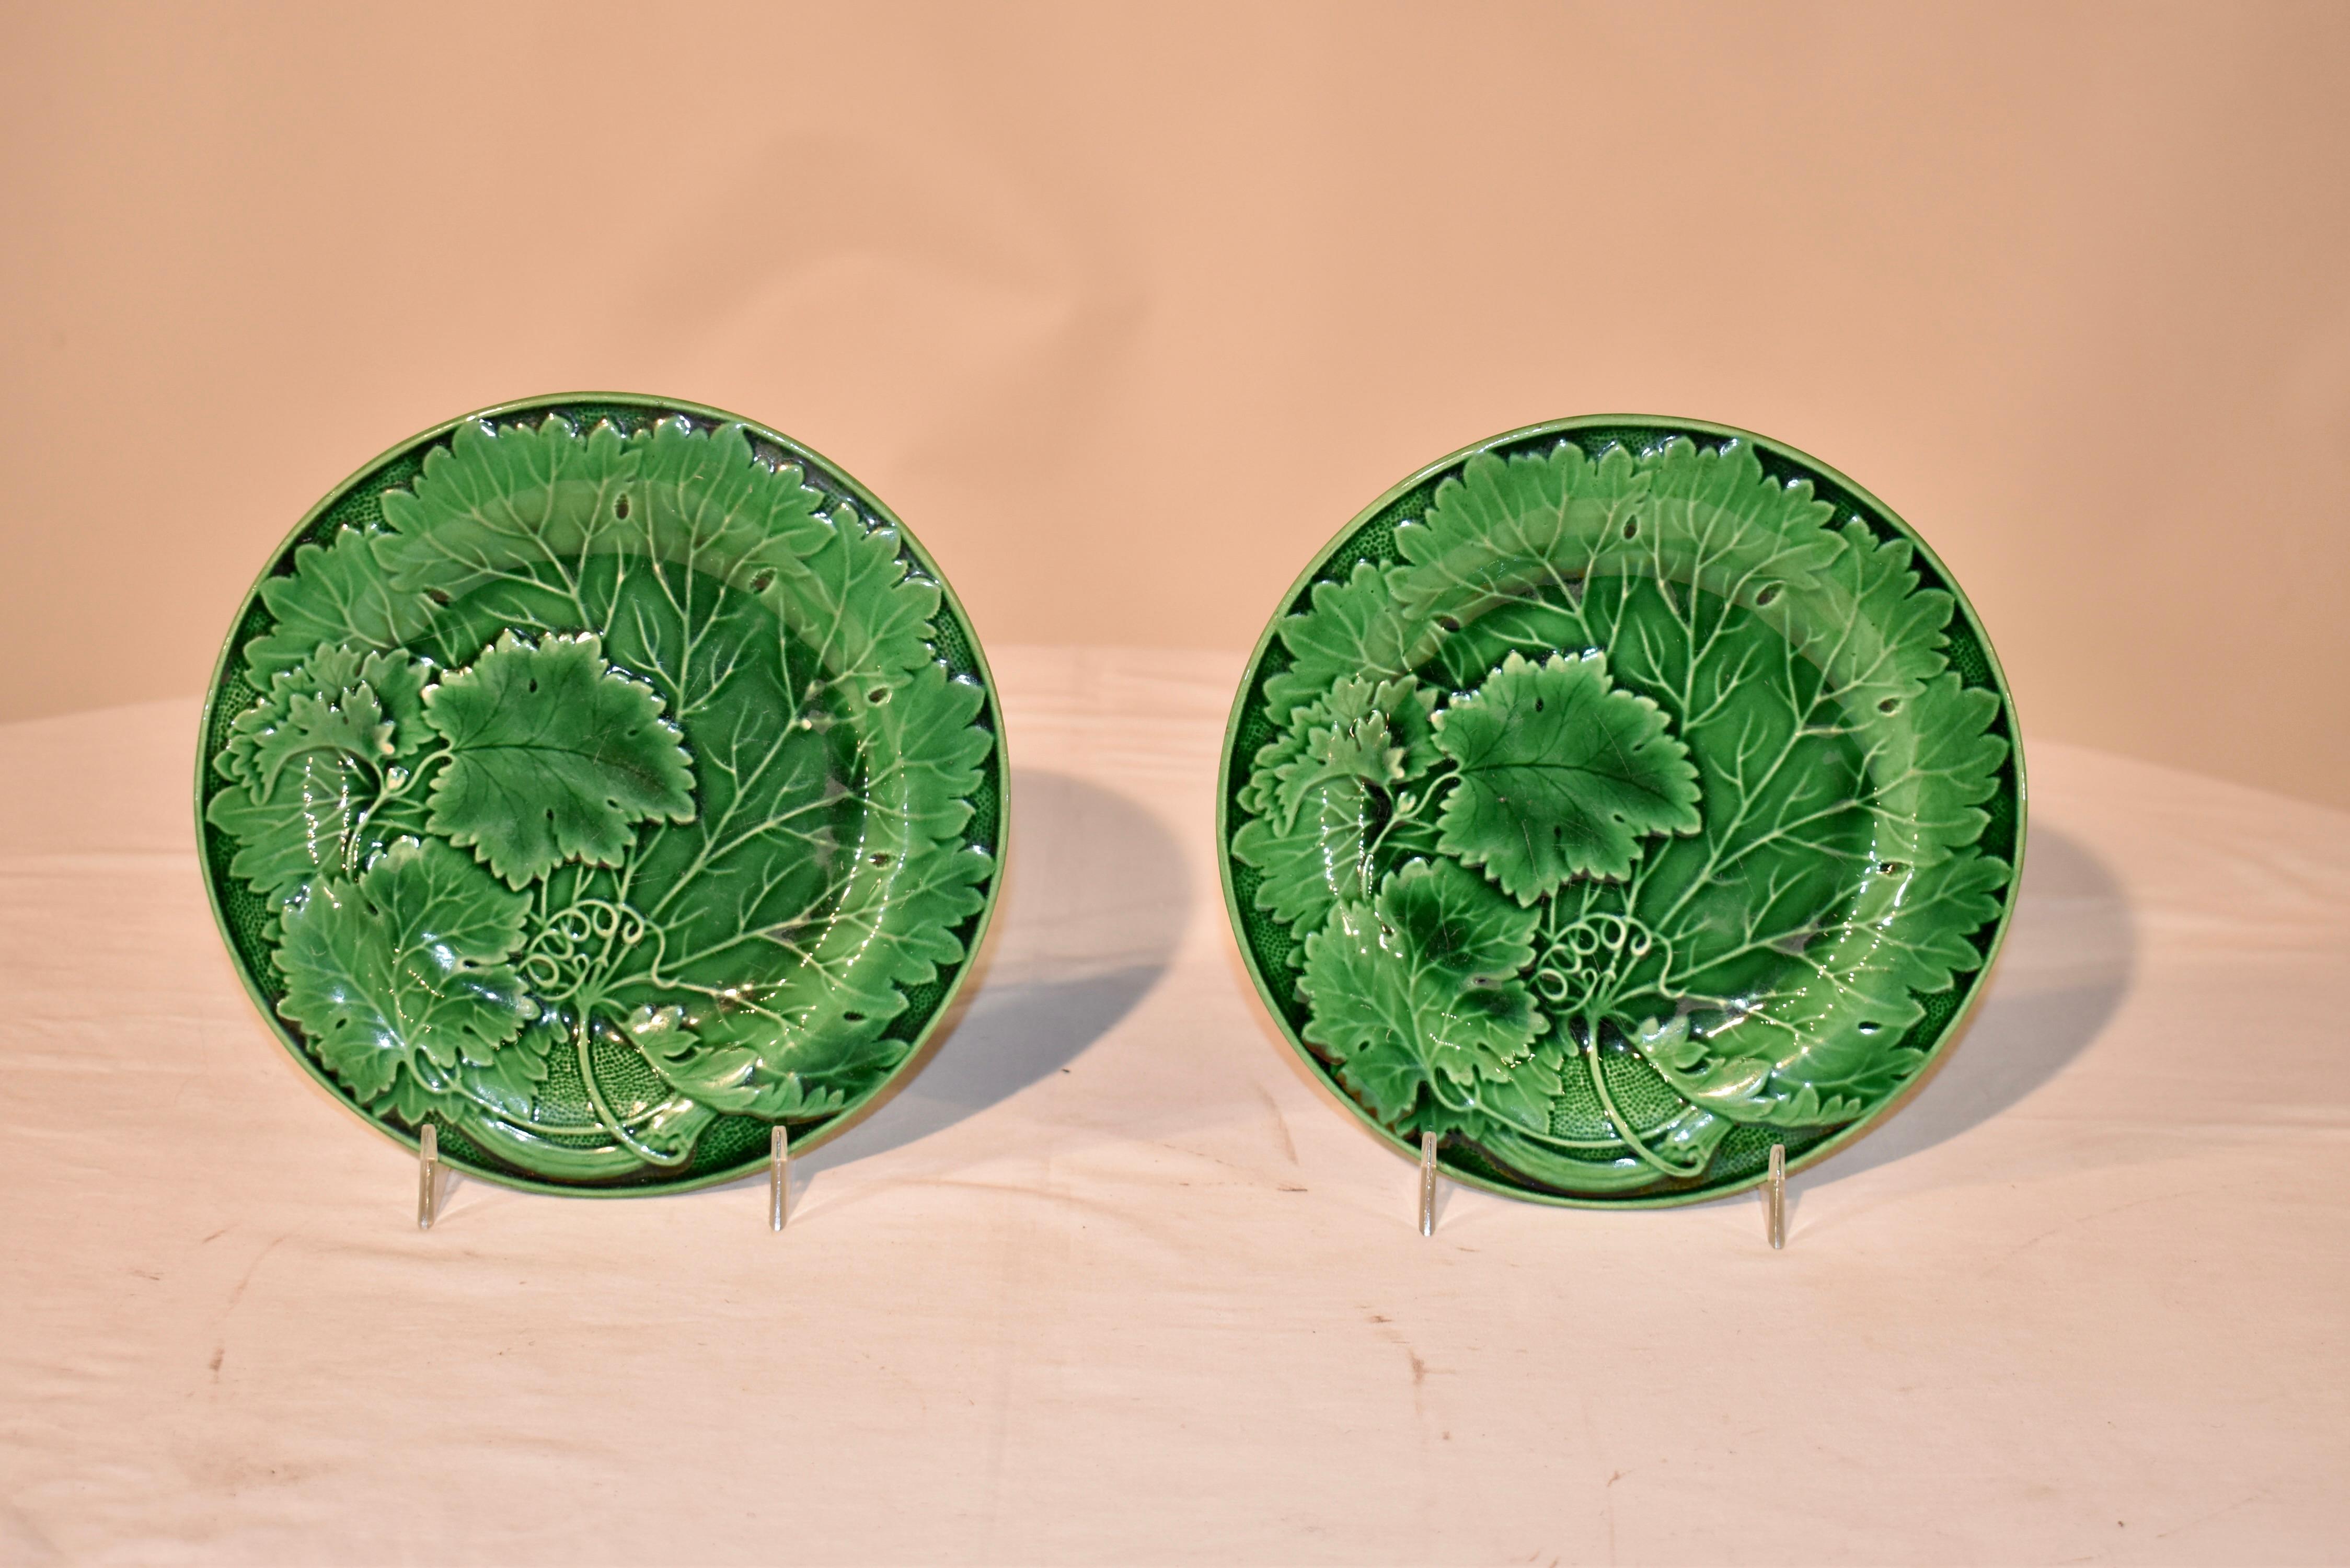 Paar schöne englische Majolikateller aus dem 19. Jahrhundert in Grün.  Das Muster ist ein großes einzelnes Blatt mit kleineren Blättern, die sich überlappen und entlang eines Tupfenmusters  geformte Umrandung.  Tellerständer nicht enthalten.